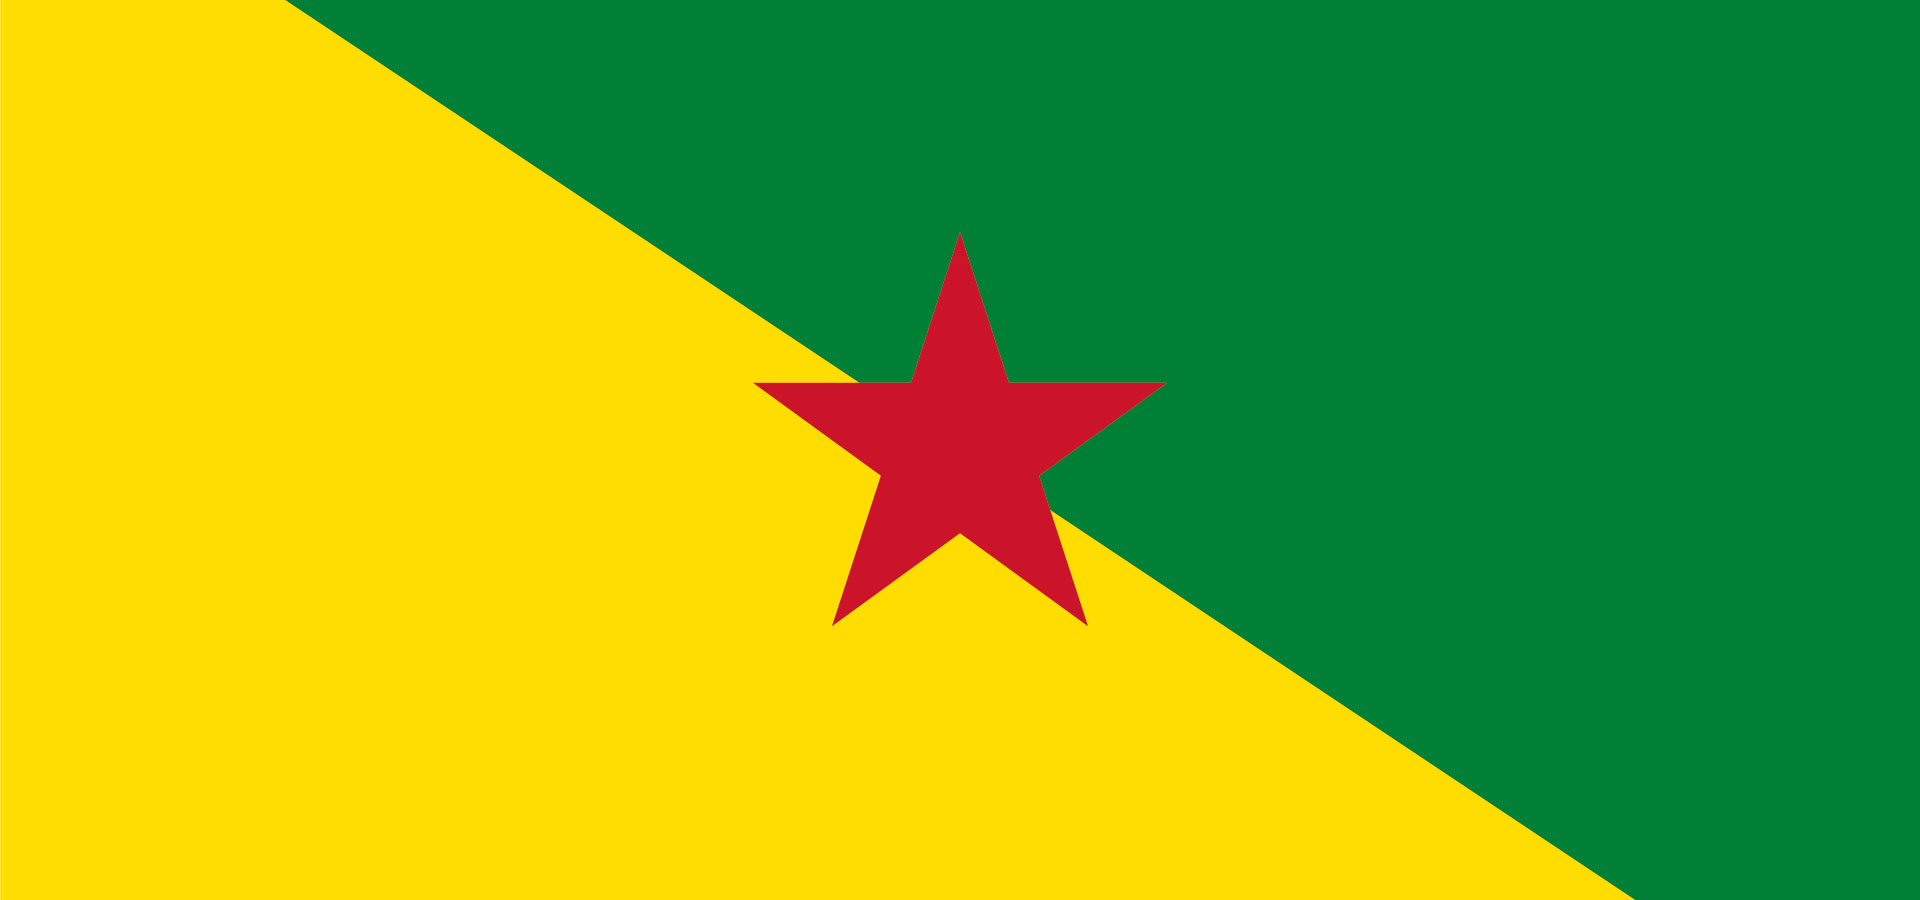 Extension de la loi du 9 décembre 1905 en Guyane